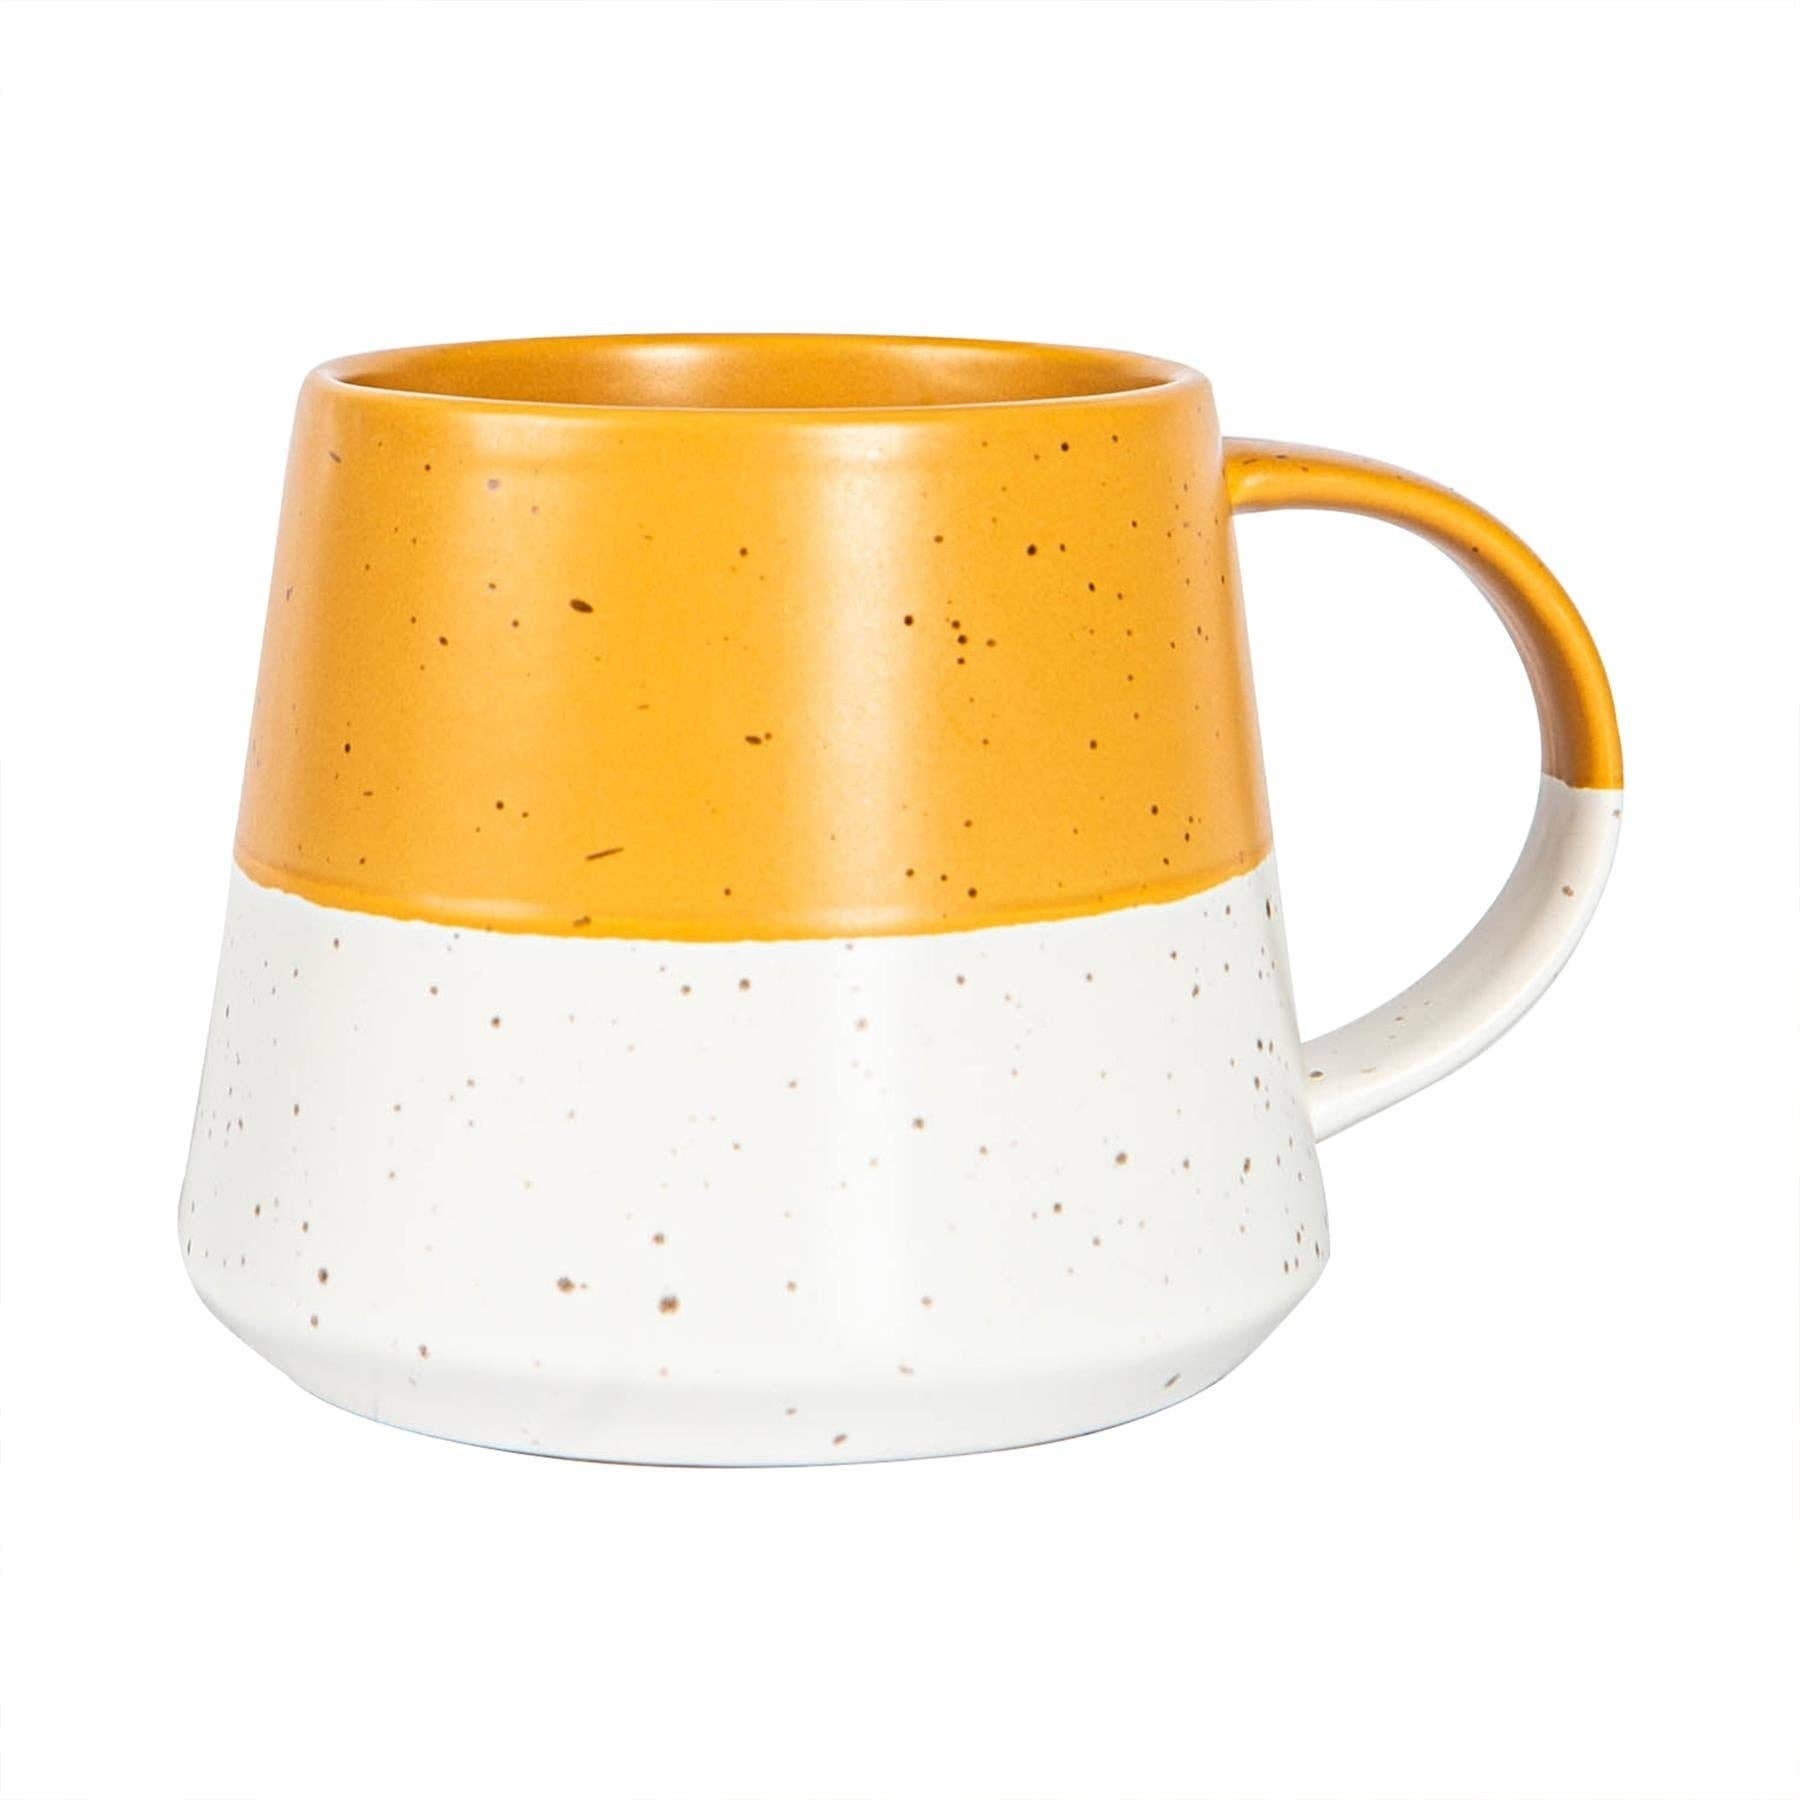 Nicola Spring 370ml Mustard Ceramic Dipped Coffee Mug